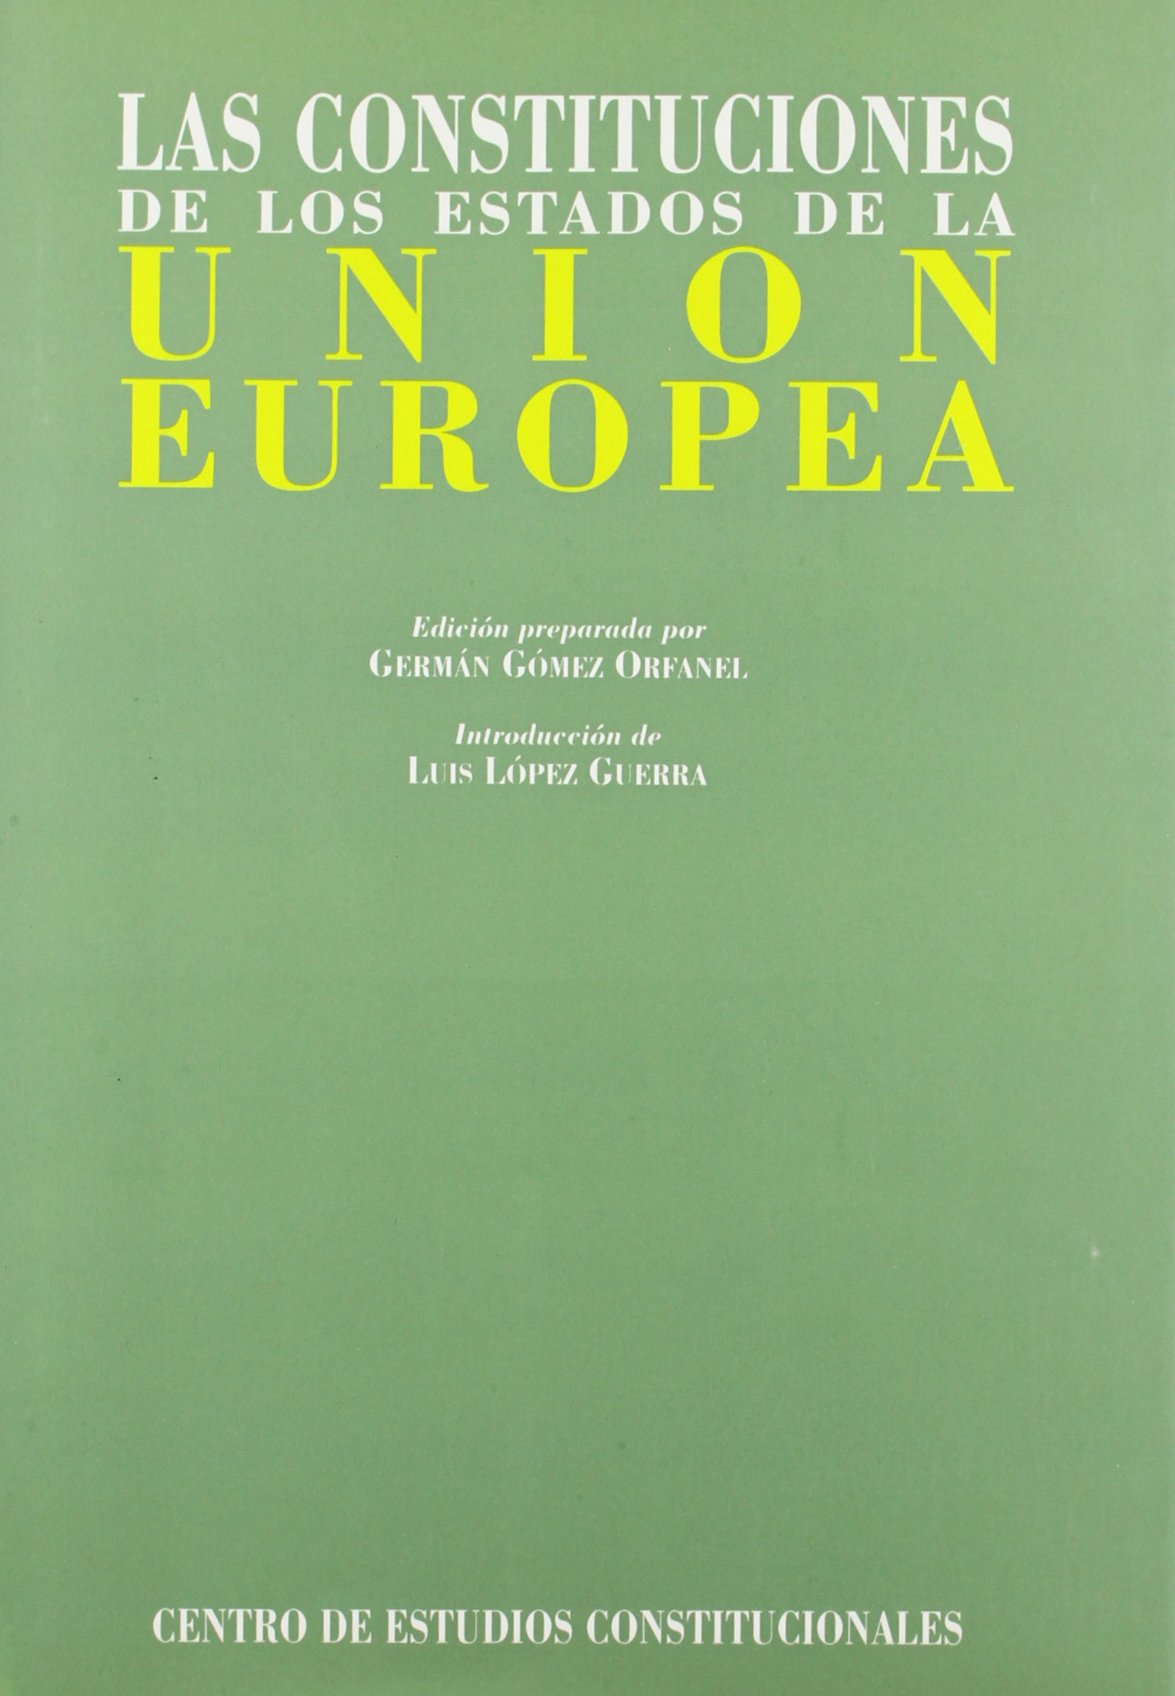 Las Constituciones de los Estados de la Unión Europea